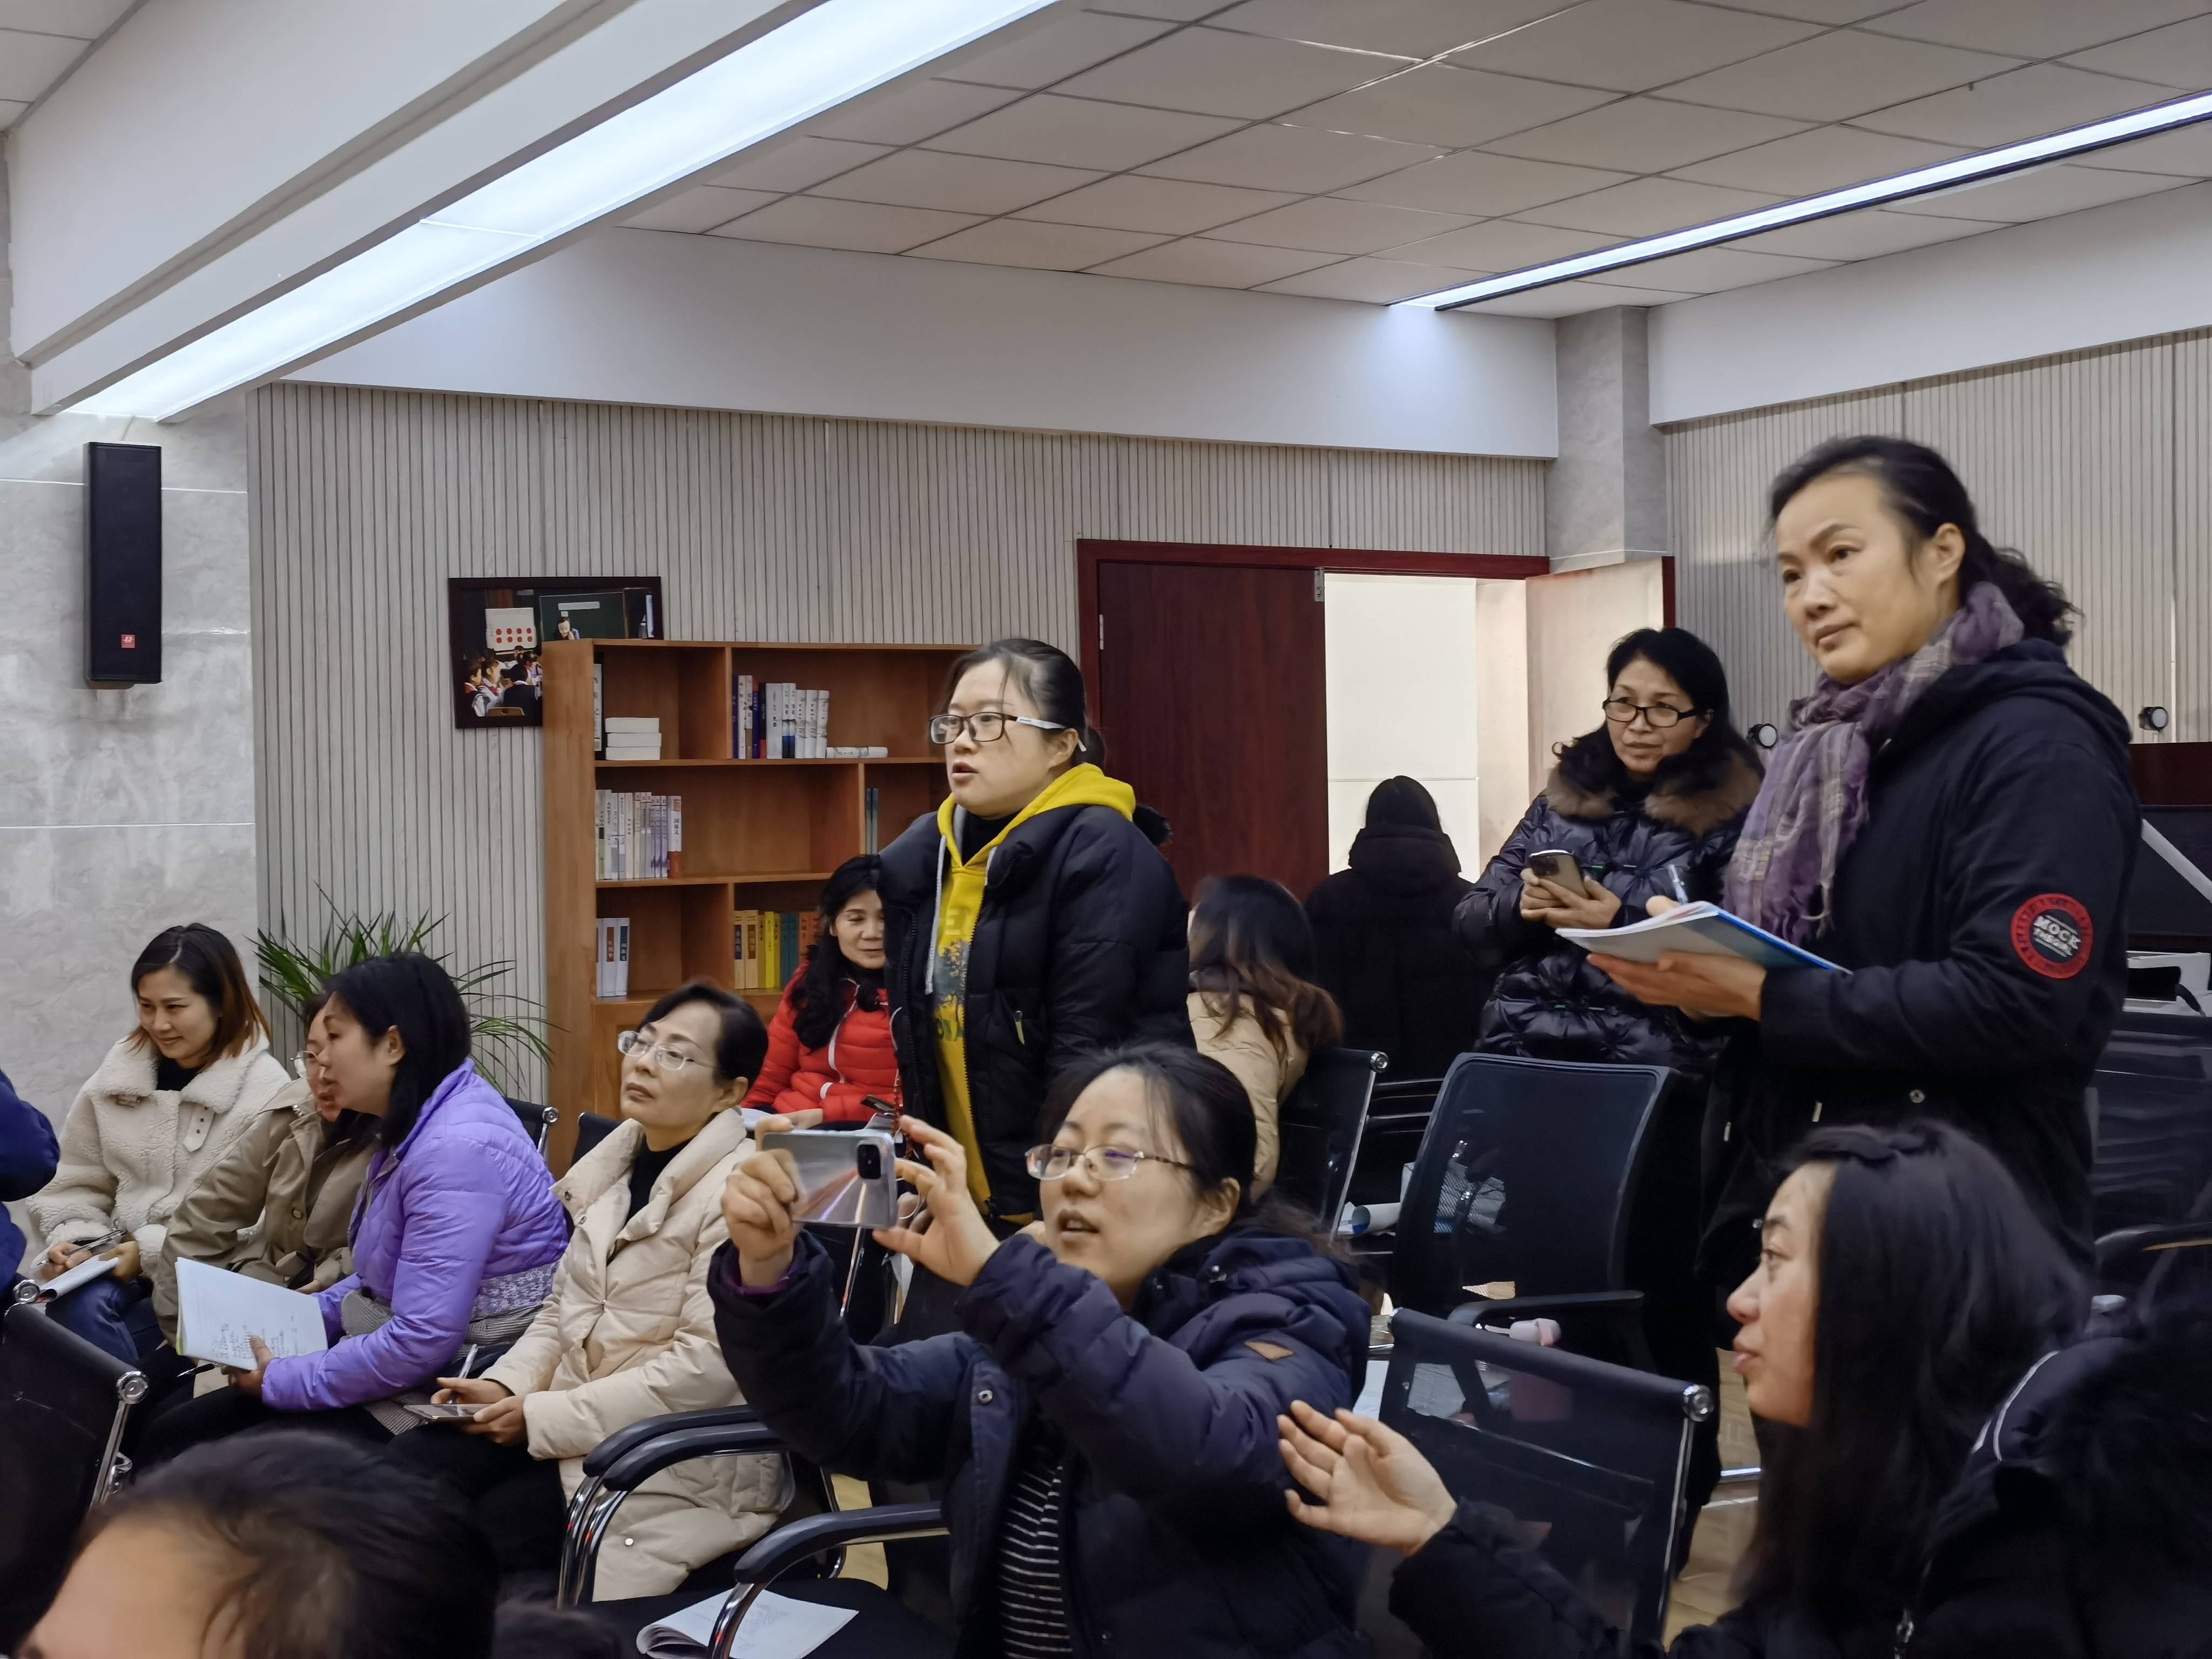 读图时代,重庆市江北区培新小学注重教师教育摄影技术提升